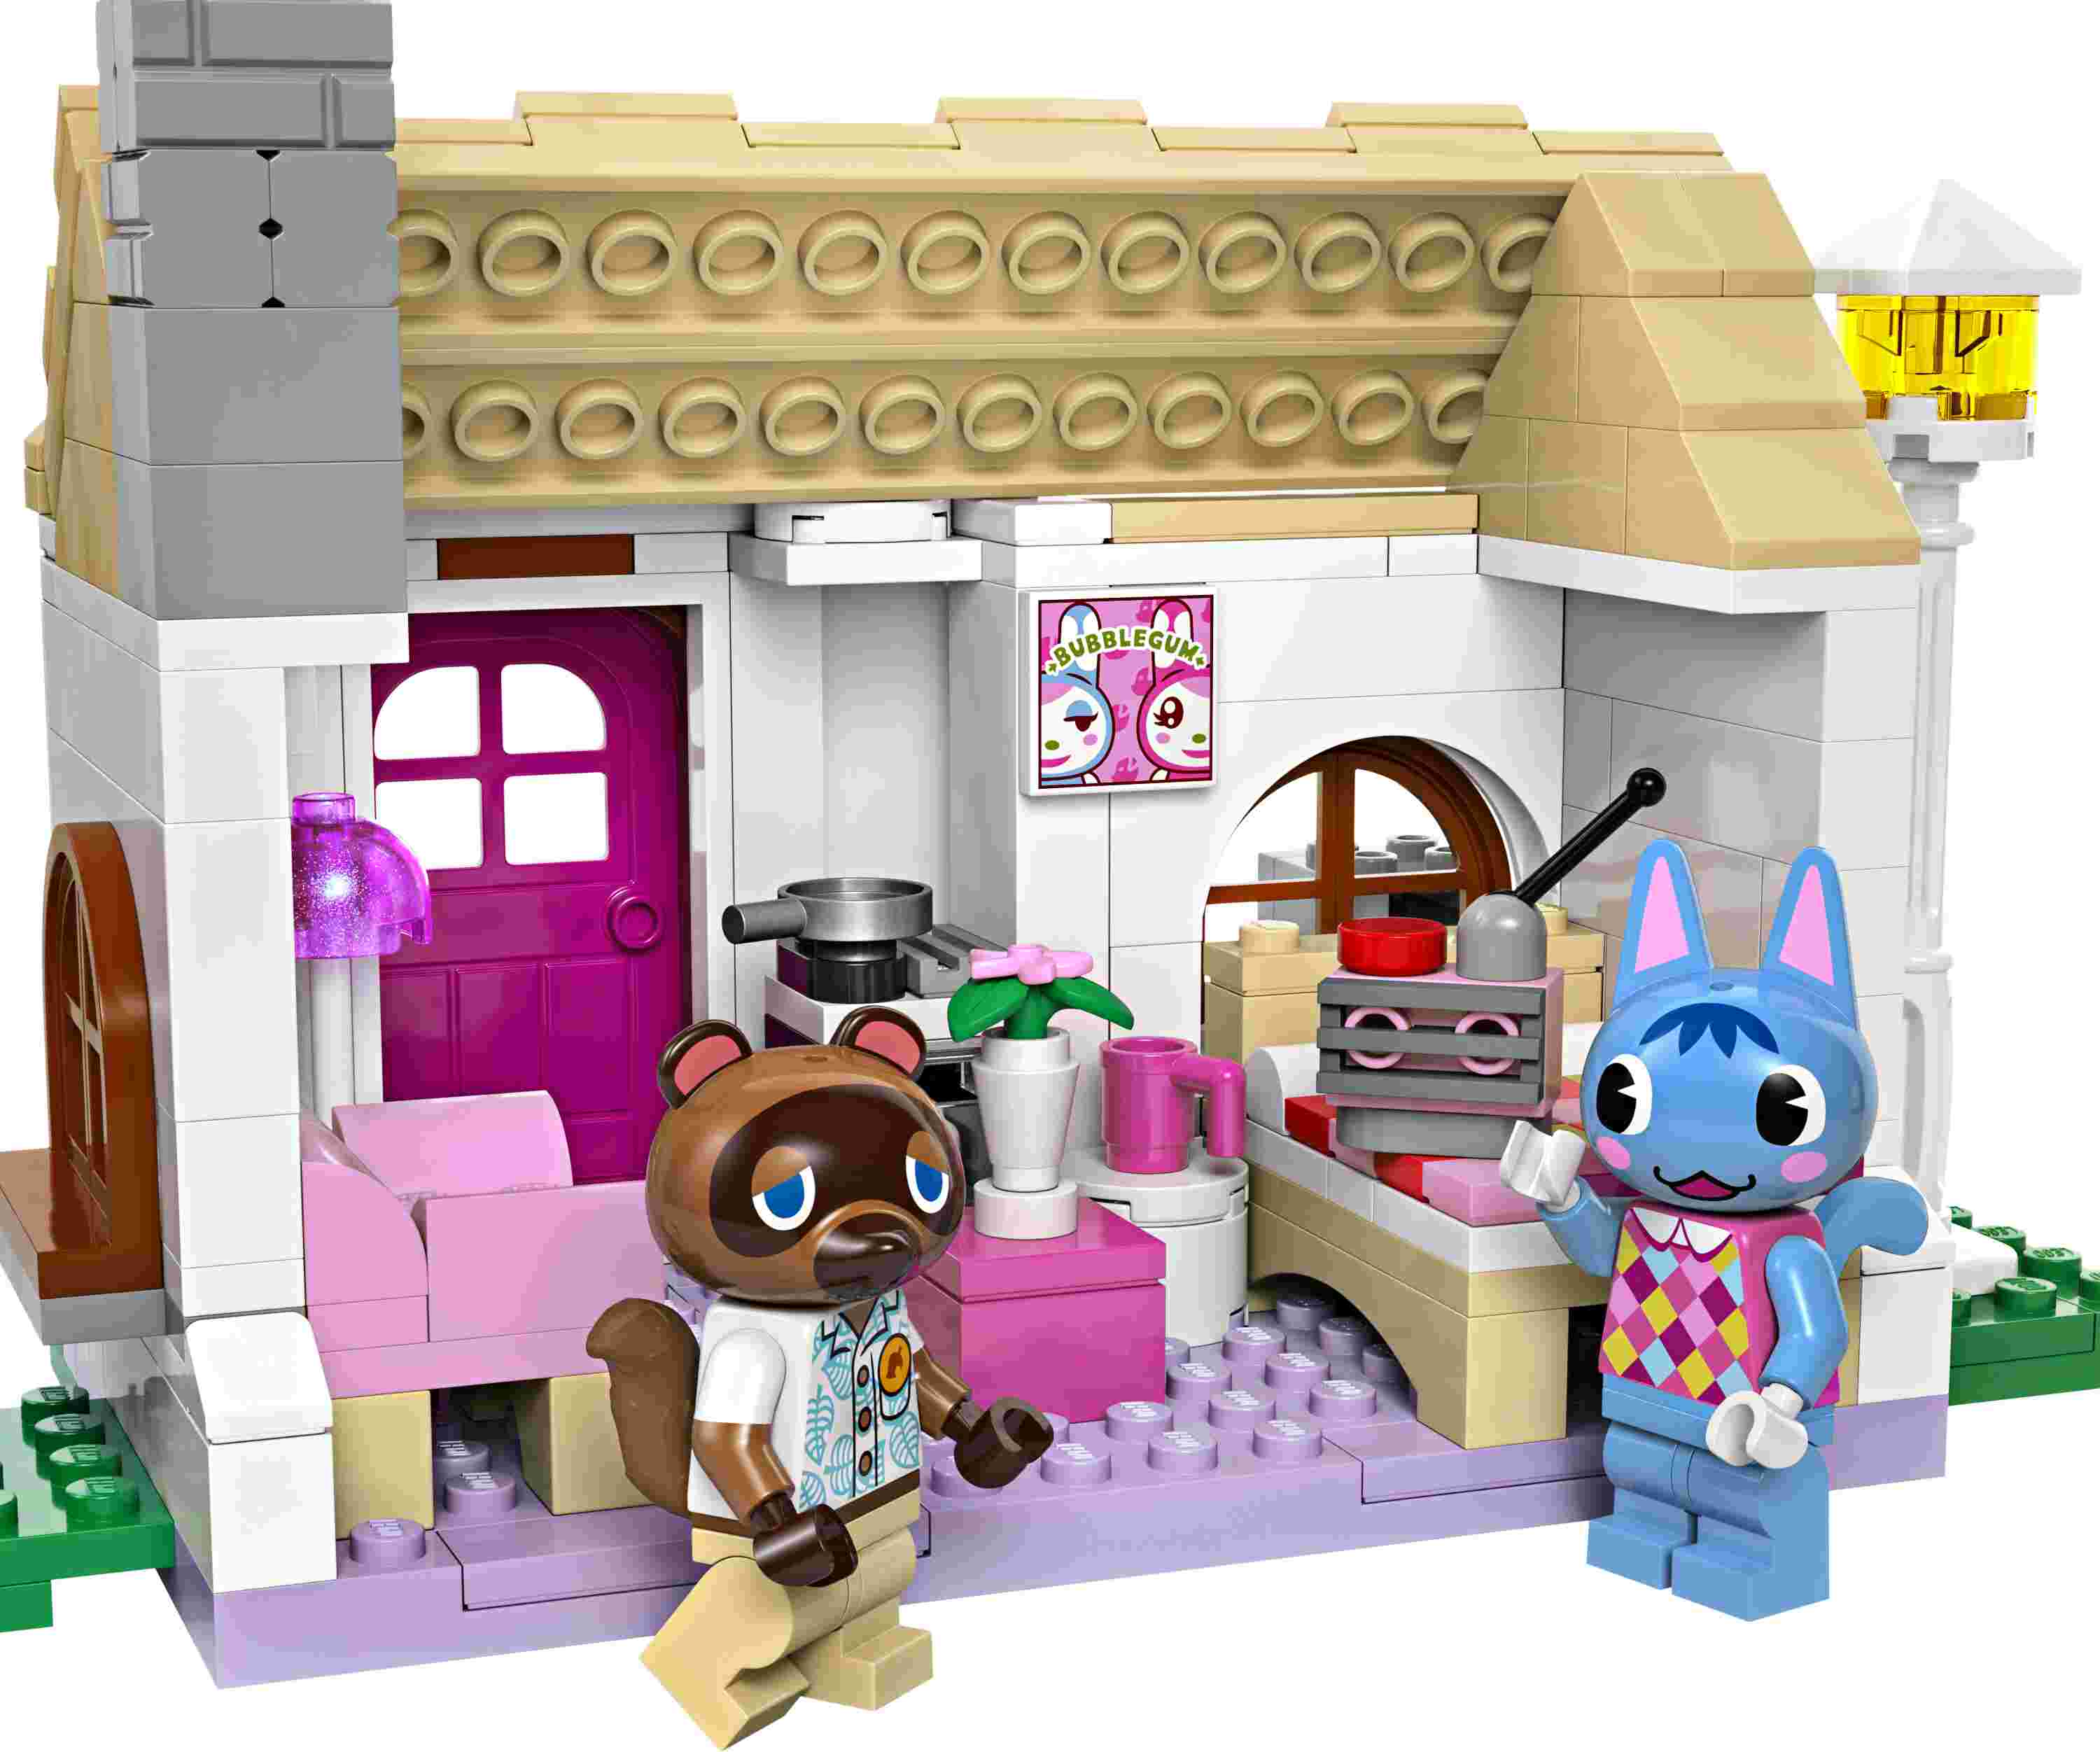 LEGO 77050 Animal Crossing Nooks Laden und Sophies Haus, 2 Minifiguren, 2 Häuser